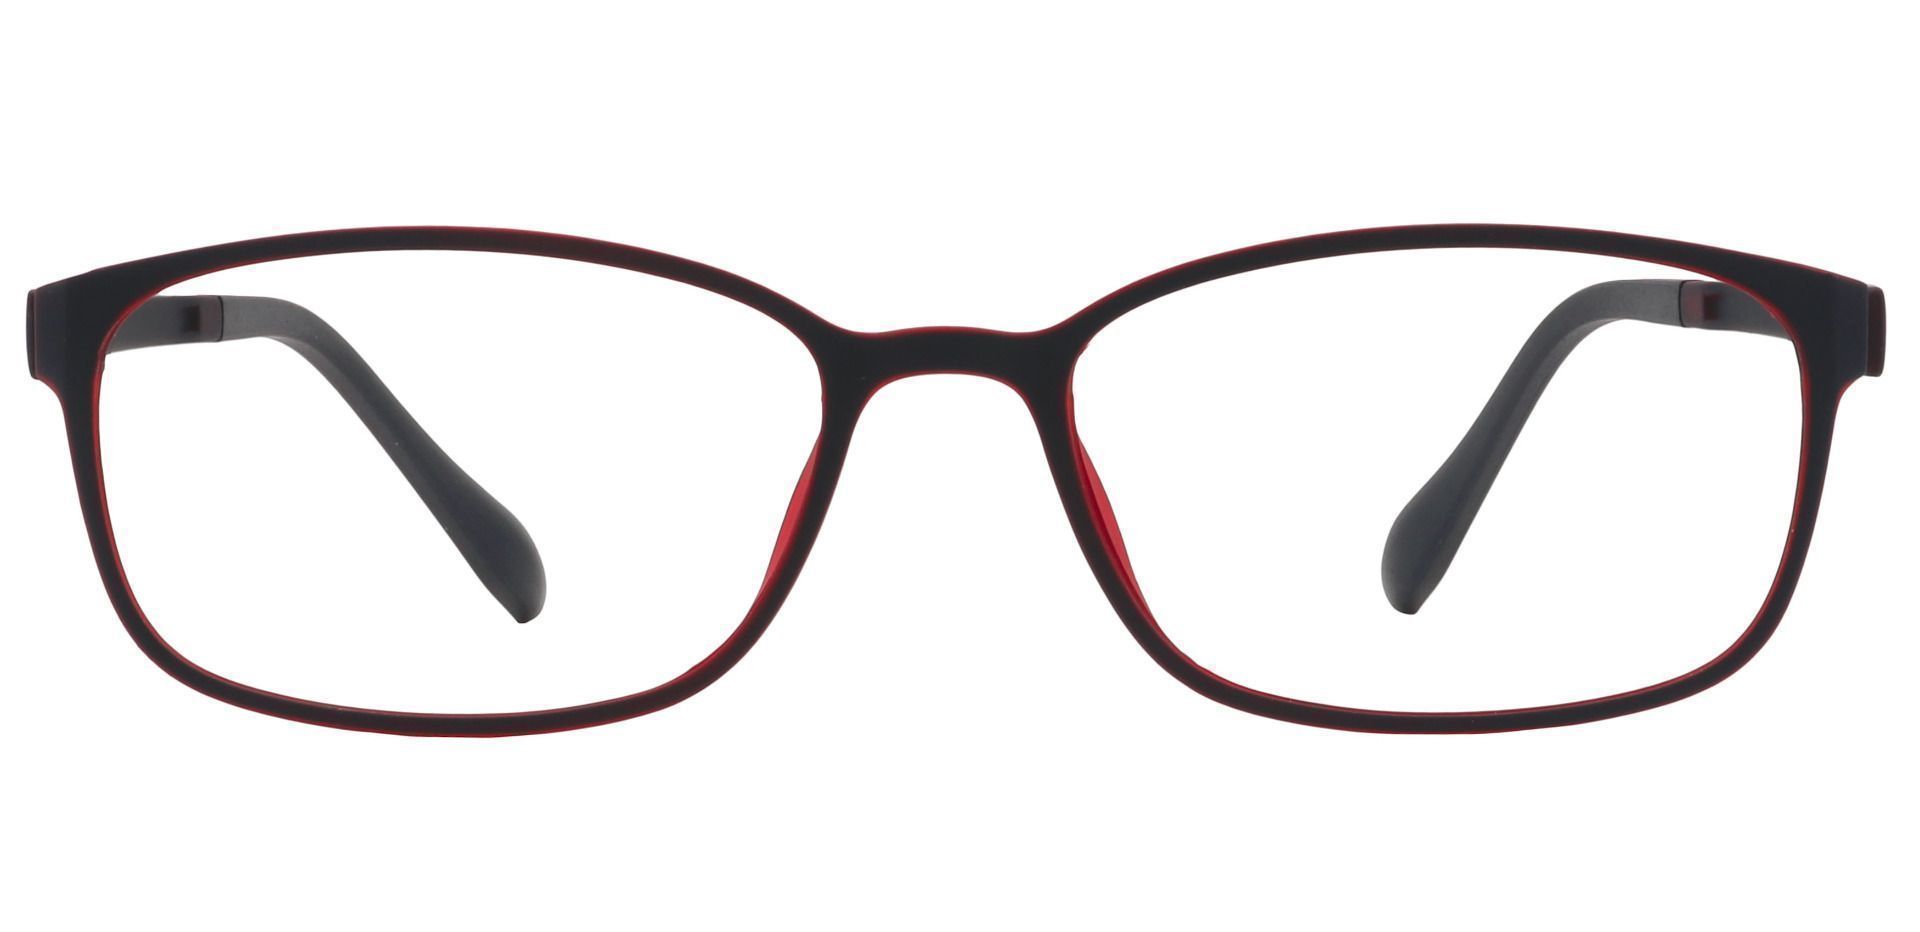 Merlot Rectangle Prescription Glasses - Matte Black/red